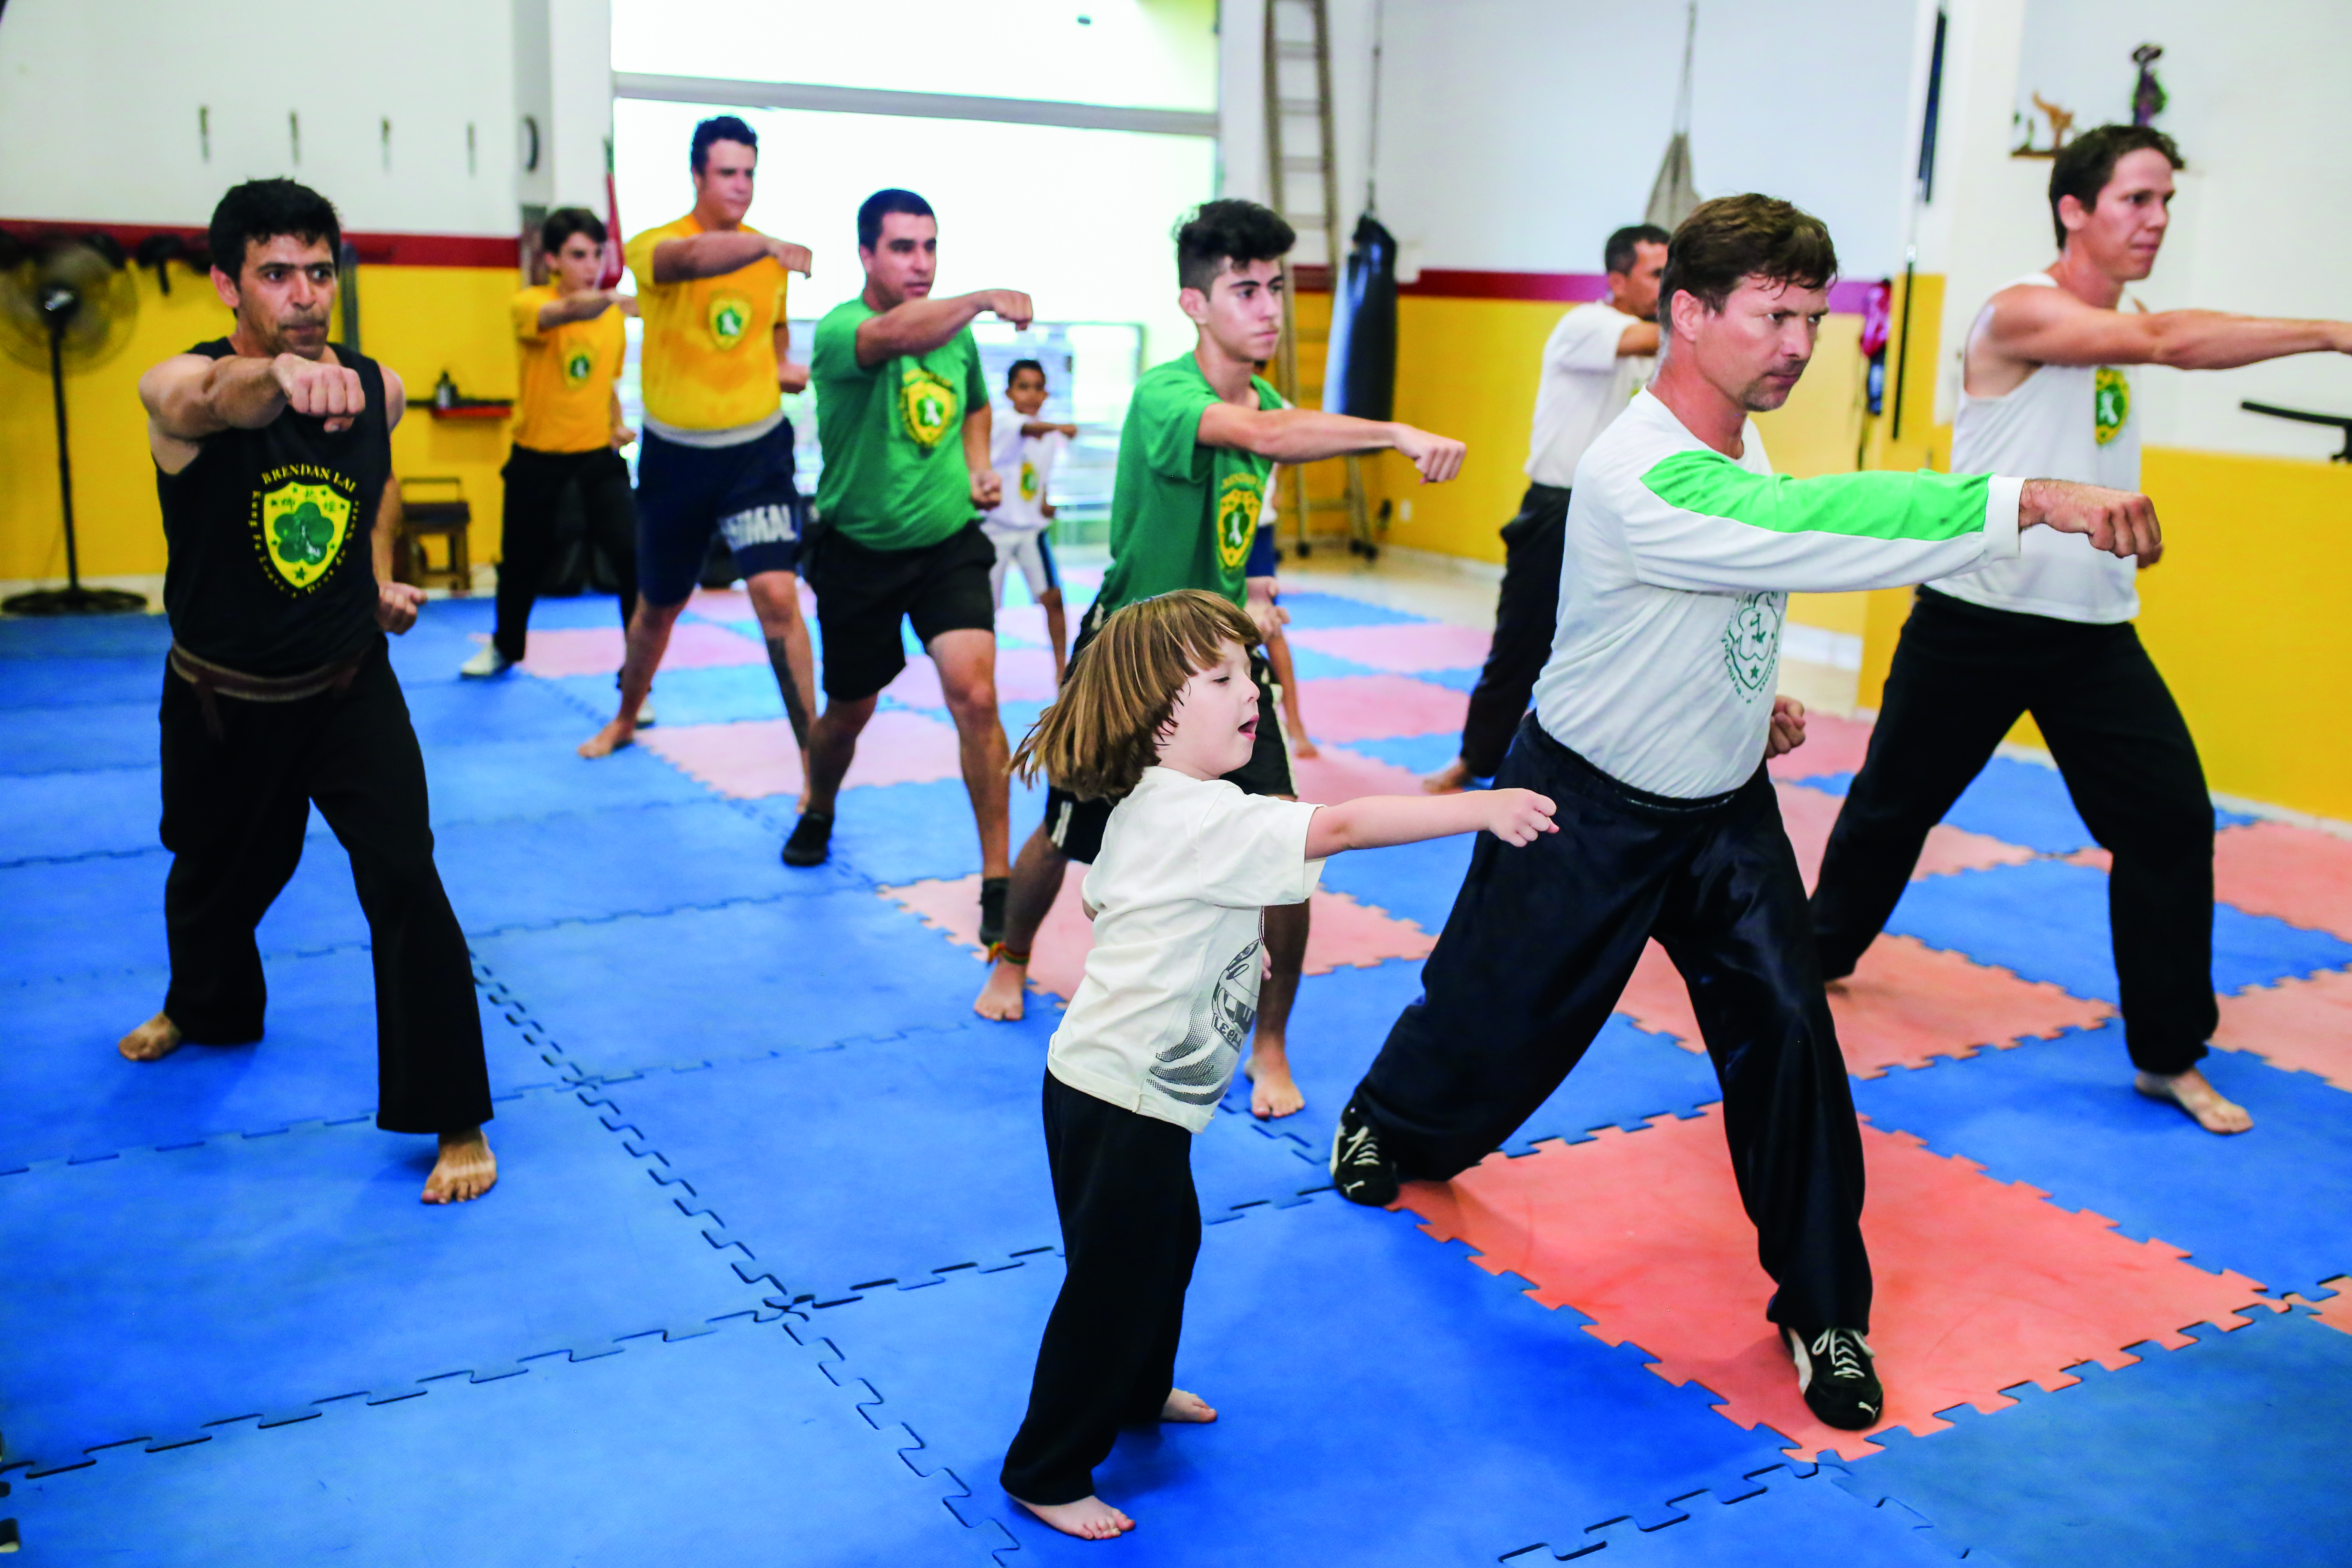 Adultos, crianças e jovens interagem nas aulas de kung fu, uma premissa para todos aprenderem a respeitar e entender o limite do outro 